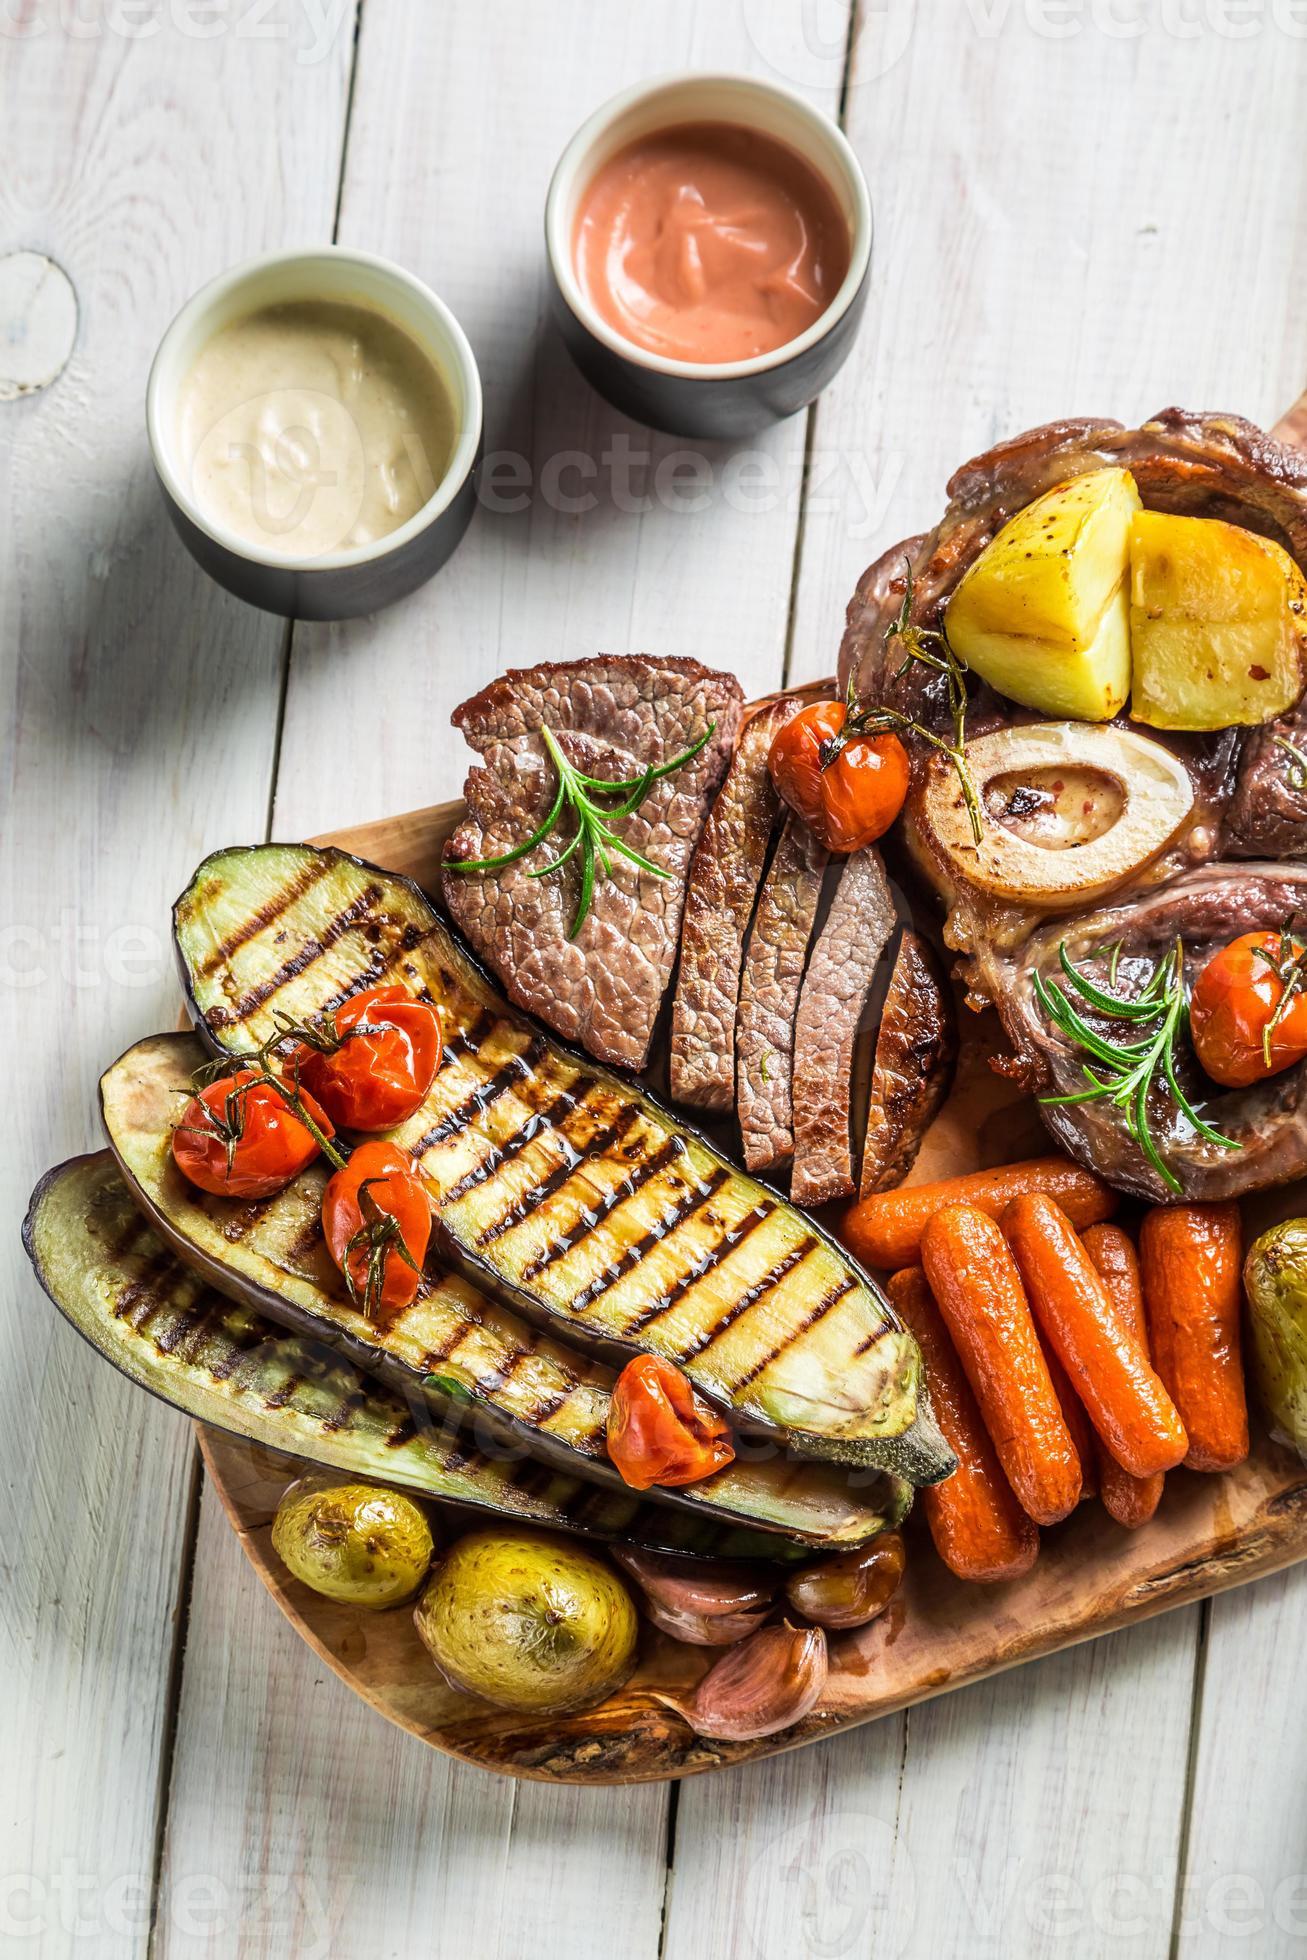 geroosterde biefstuk en groenten met kruiden op een houten bord foto